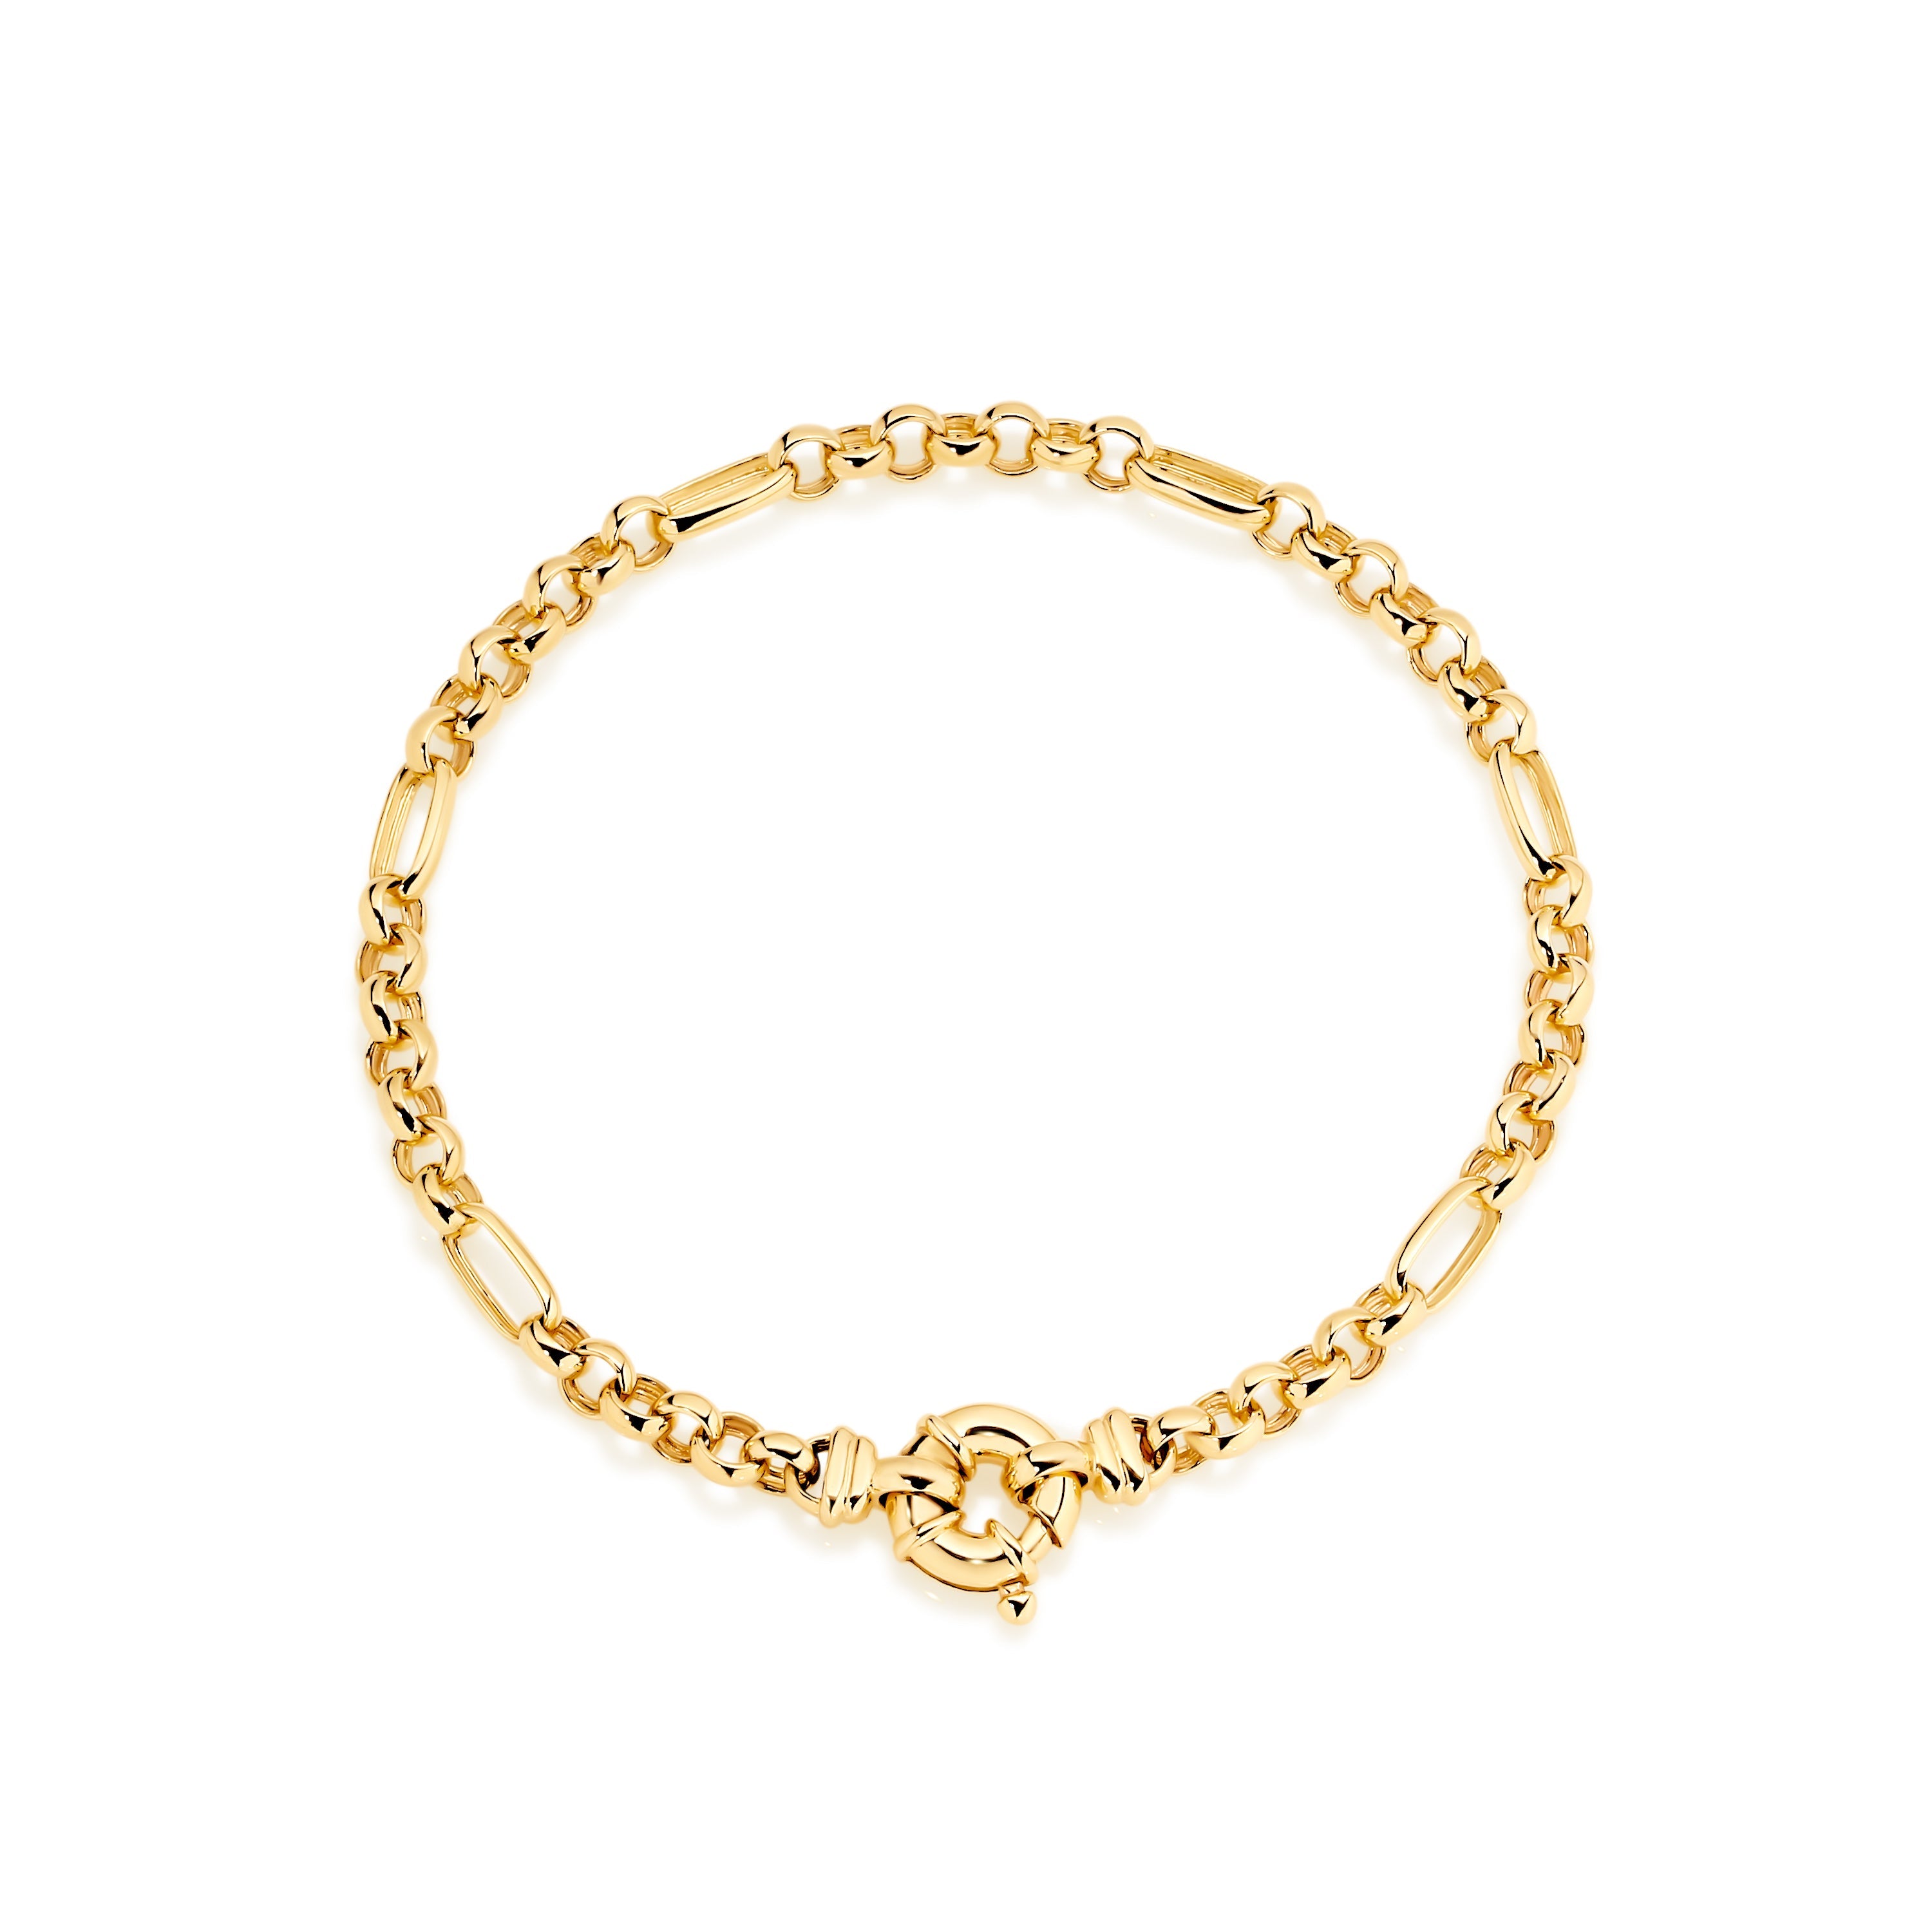 9ct solid gold bracelet